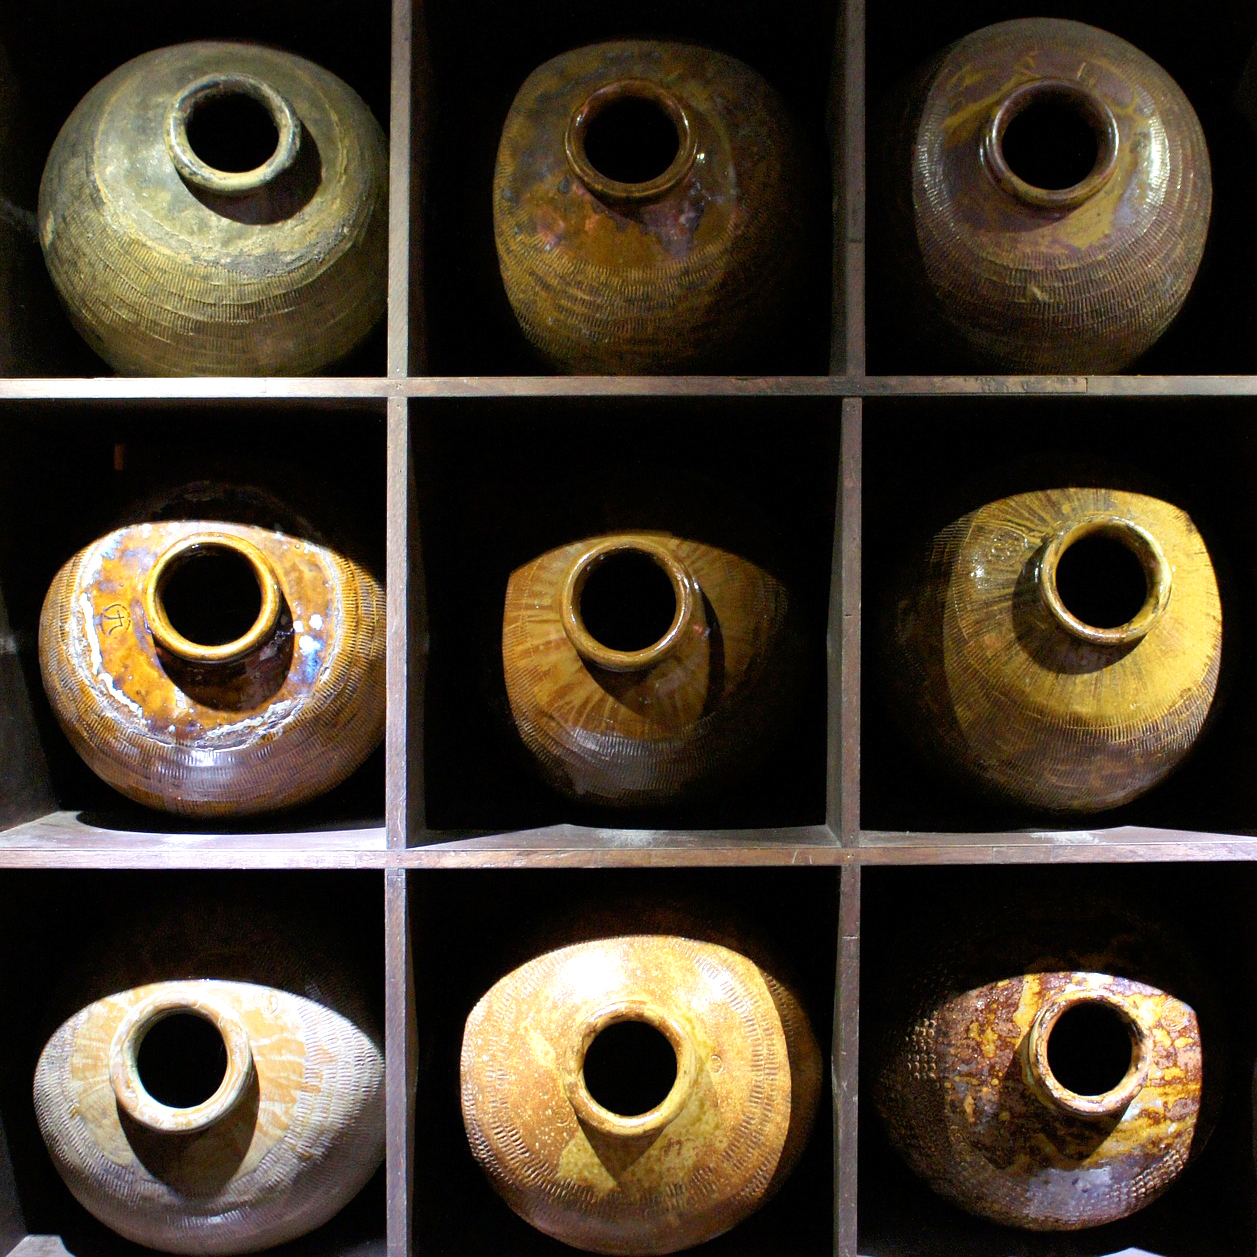 vasi di ceramica